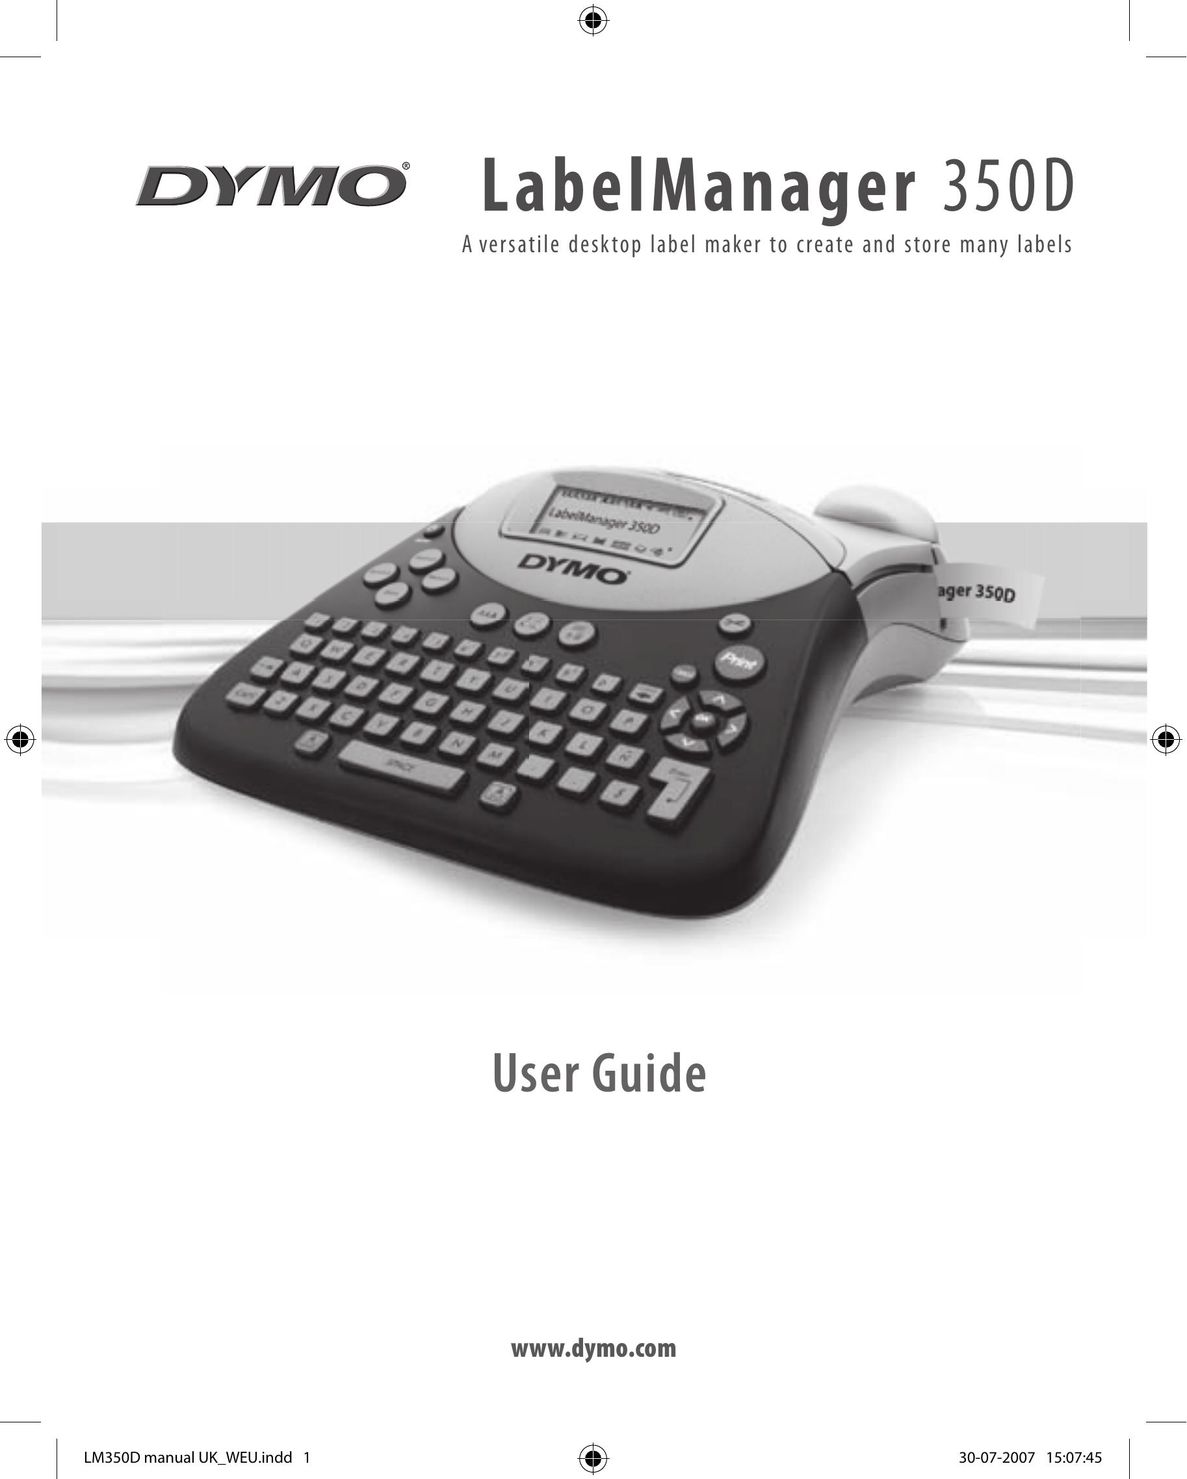 Dymo 350D Printer User Manual